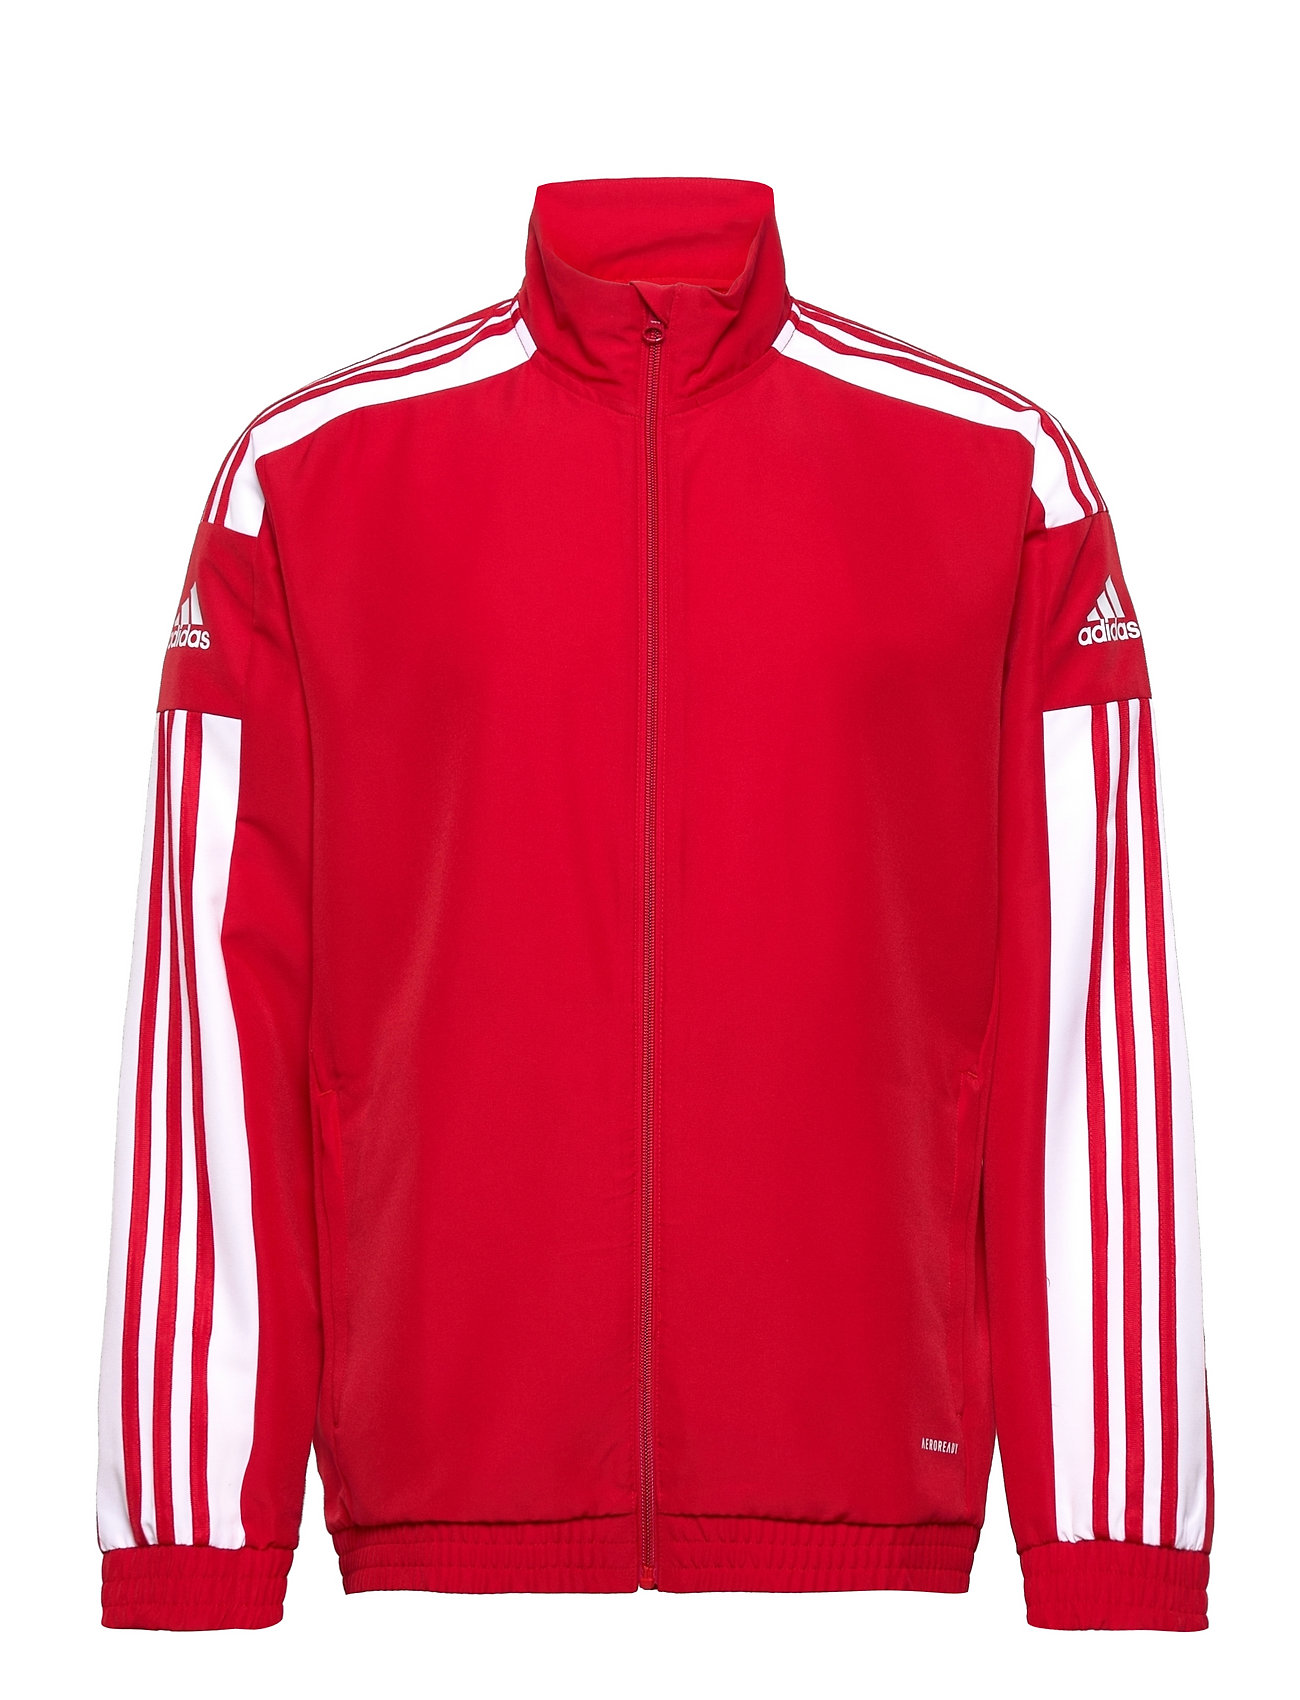 Sq21 Pre Jkt Sport Sweat-shirts & Hoodies Sweat-shirts Red Adidas Performance